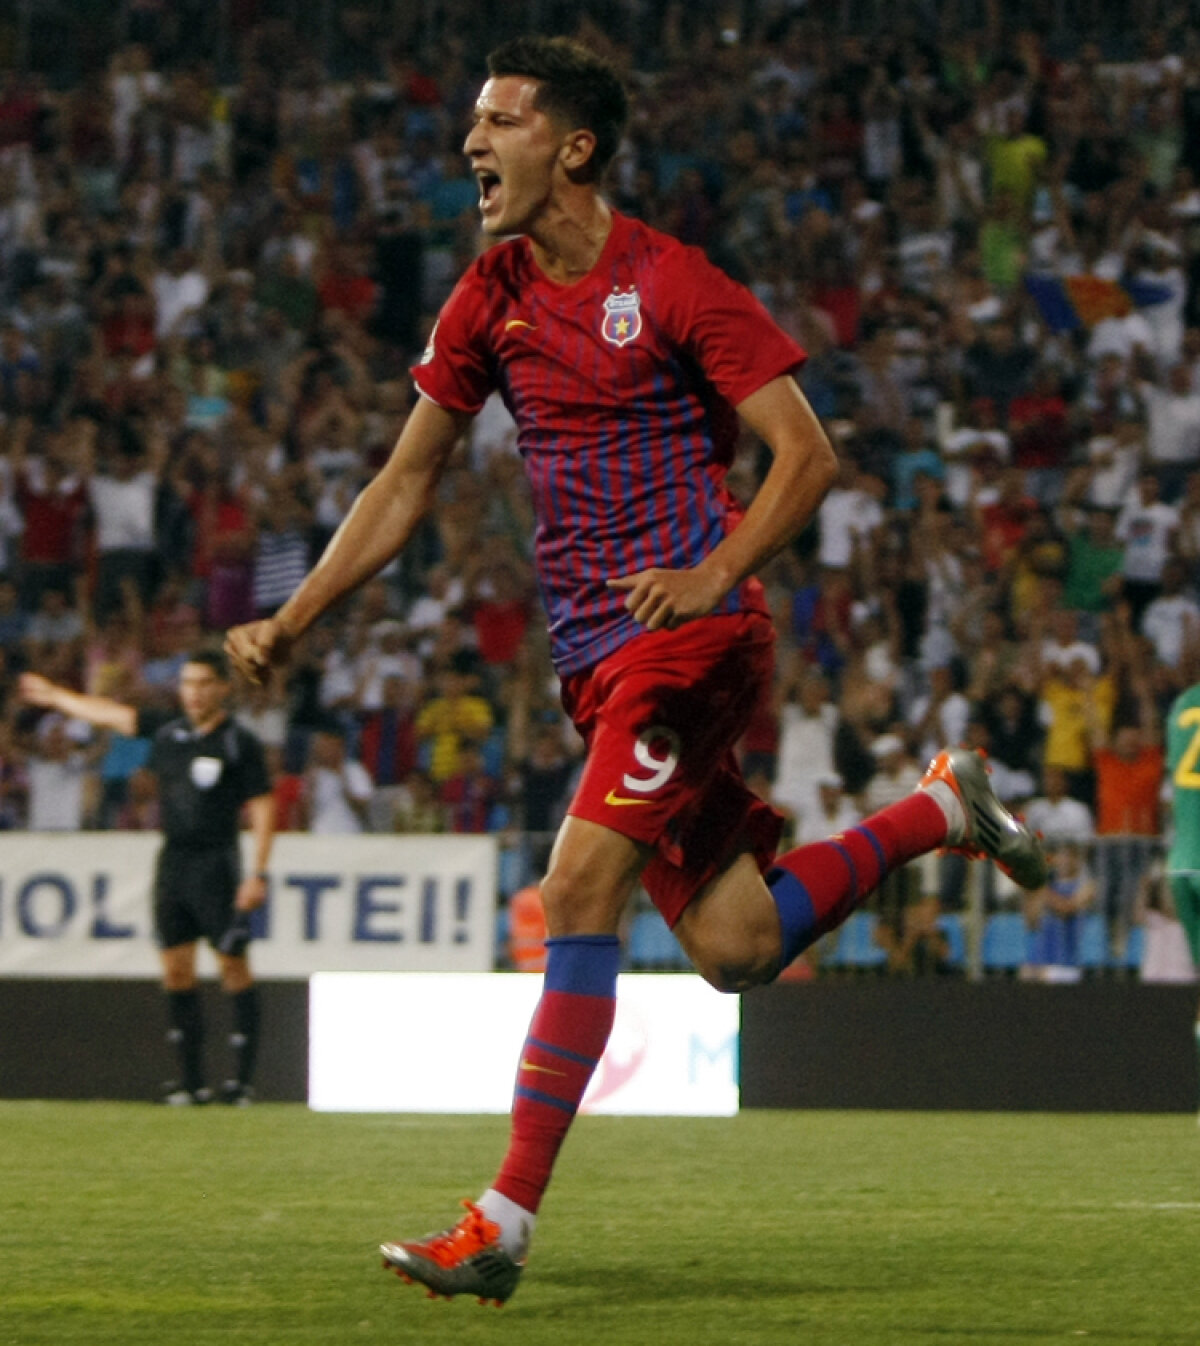 Sinusoida lui Mihai Costea: 31 iulie 2010, gol anulat în Ghencea - 31 iulie 2011, gol la debut pentru Steaua